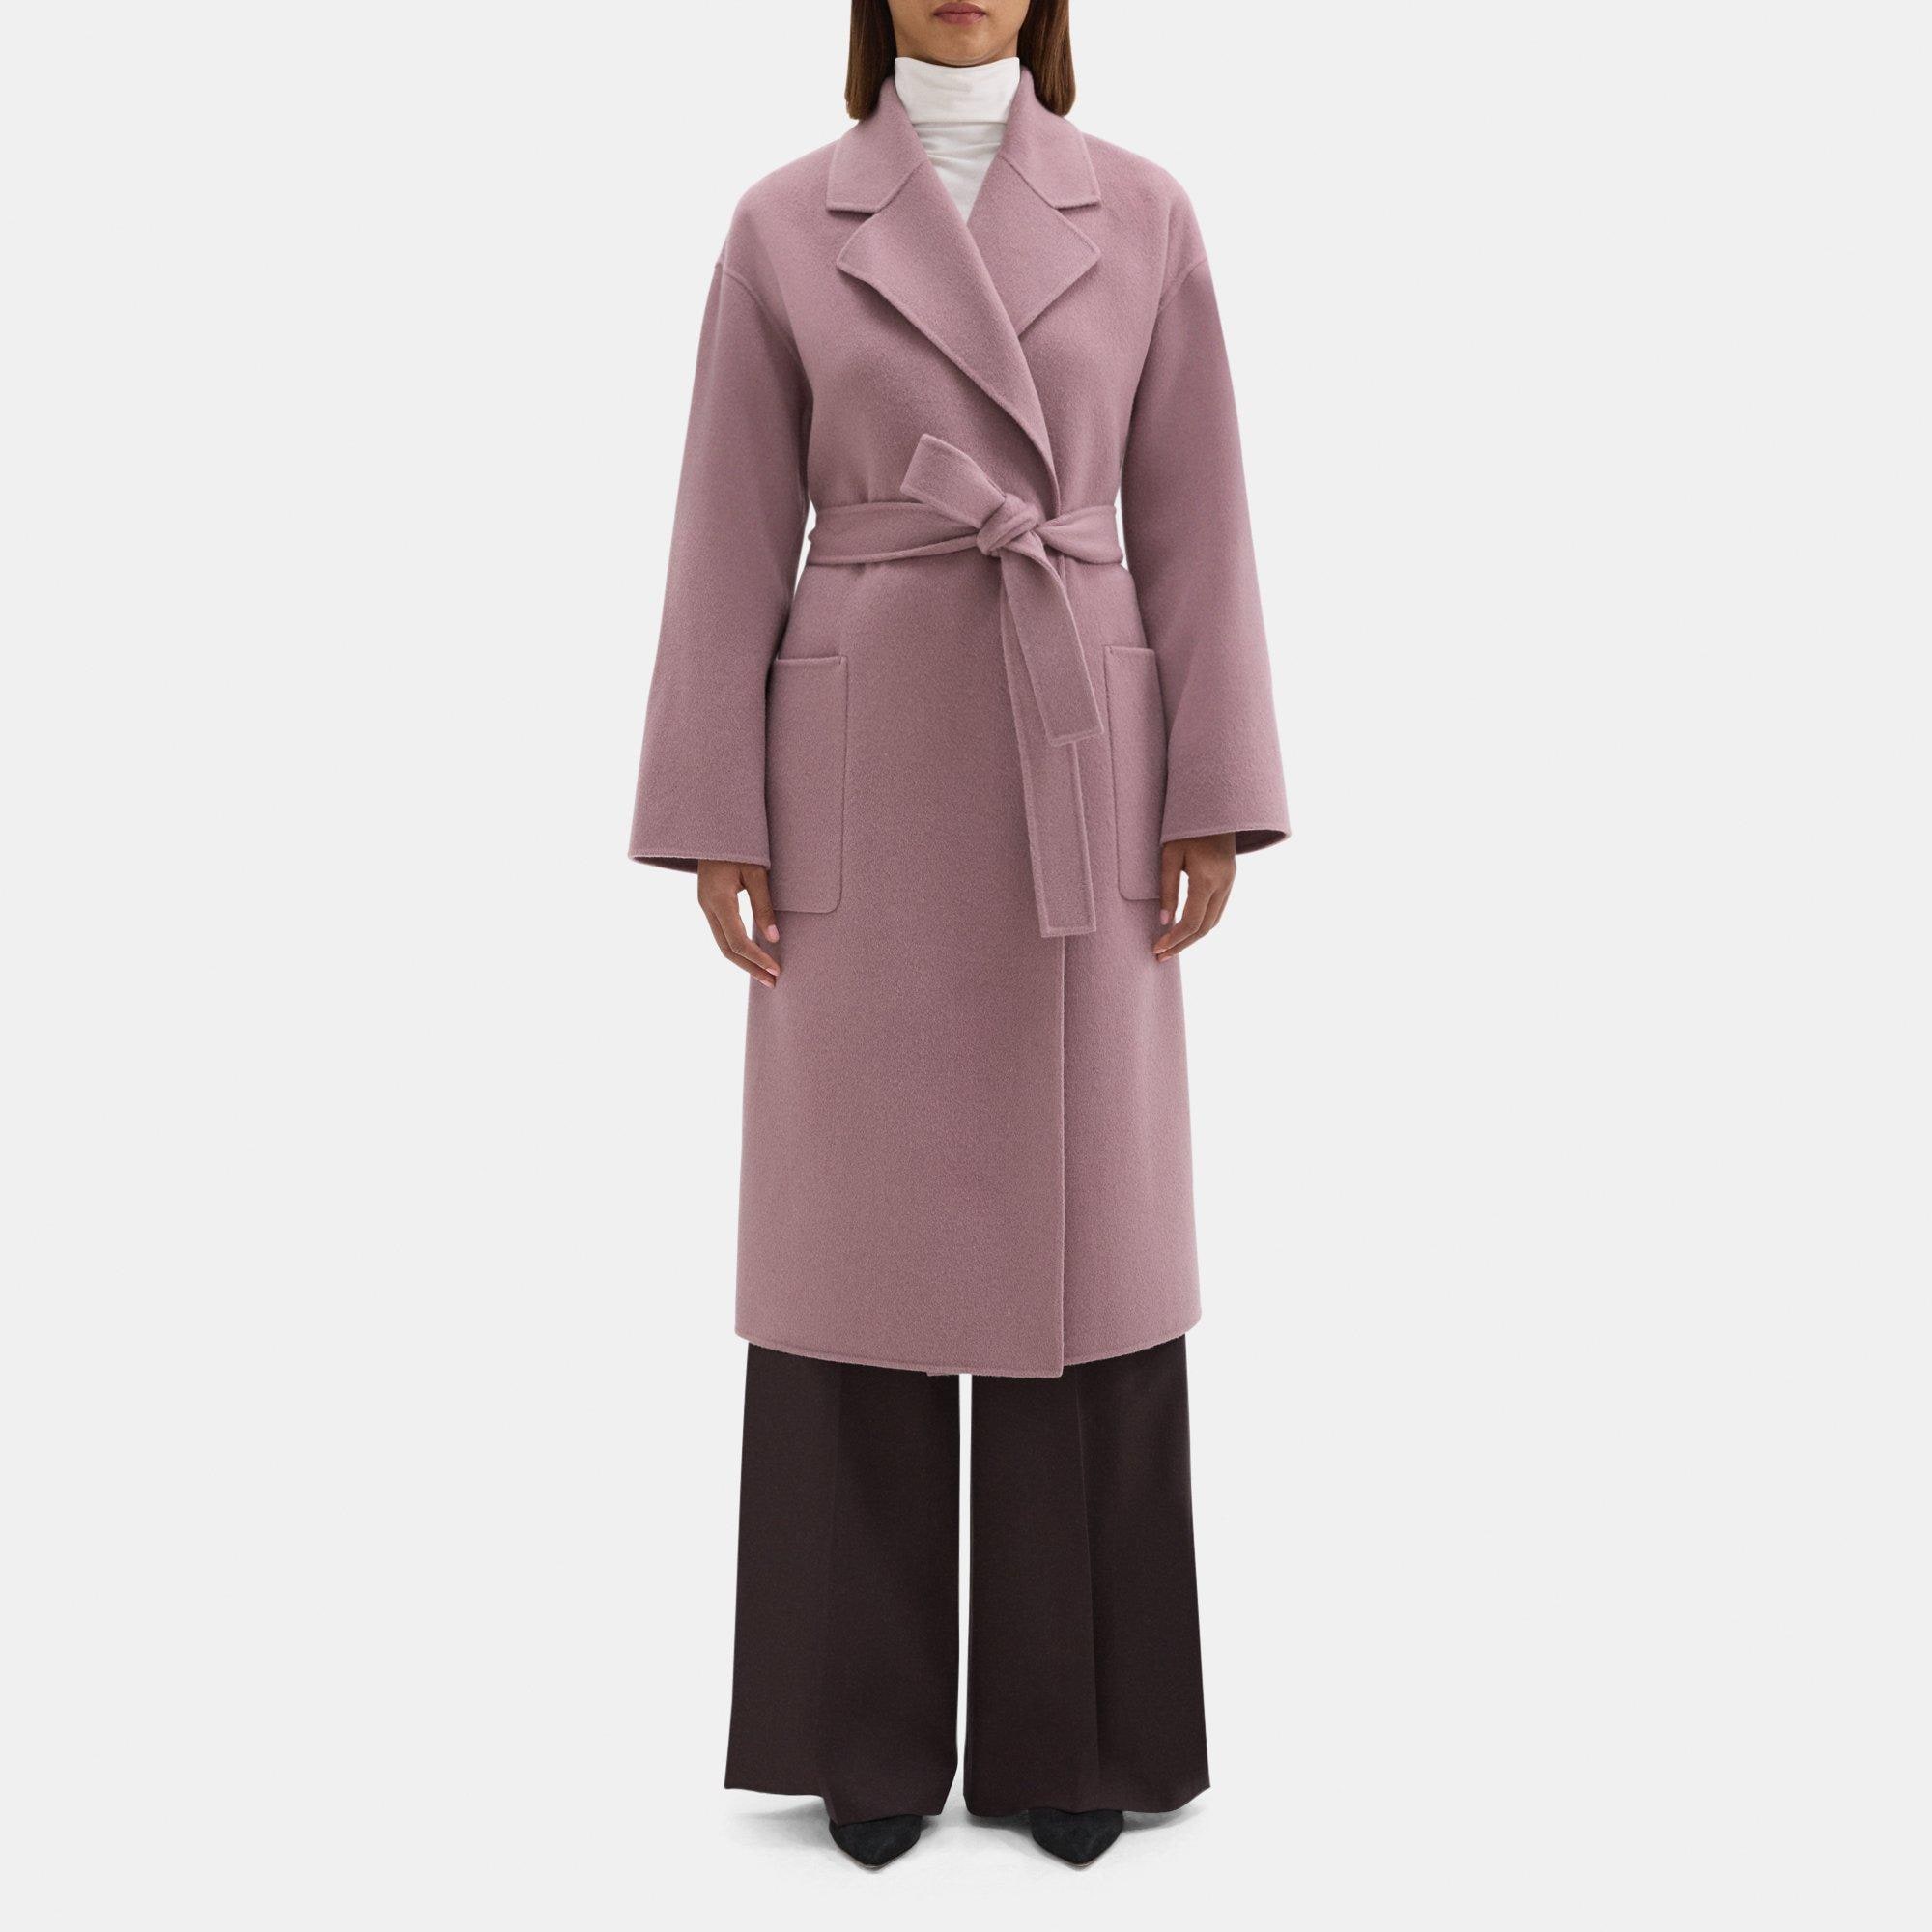 띠어리 Theory Robe Coat in Double-Face Wool-Cashmere,PLUM MELANGE